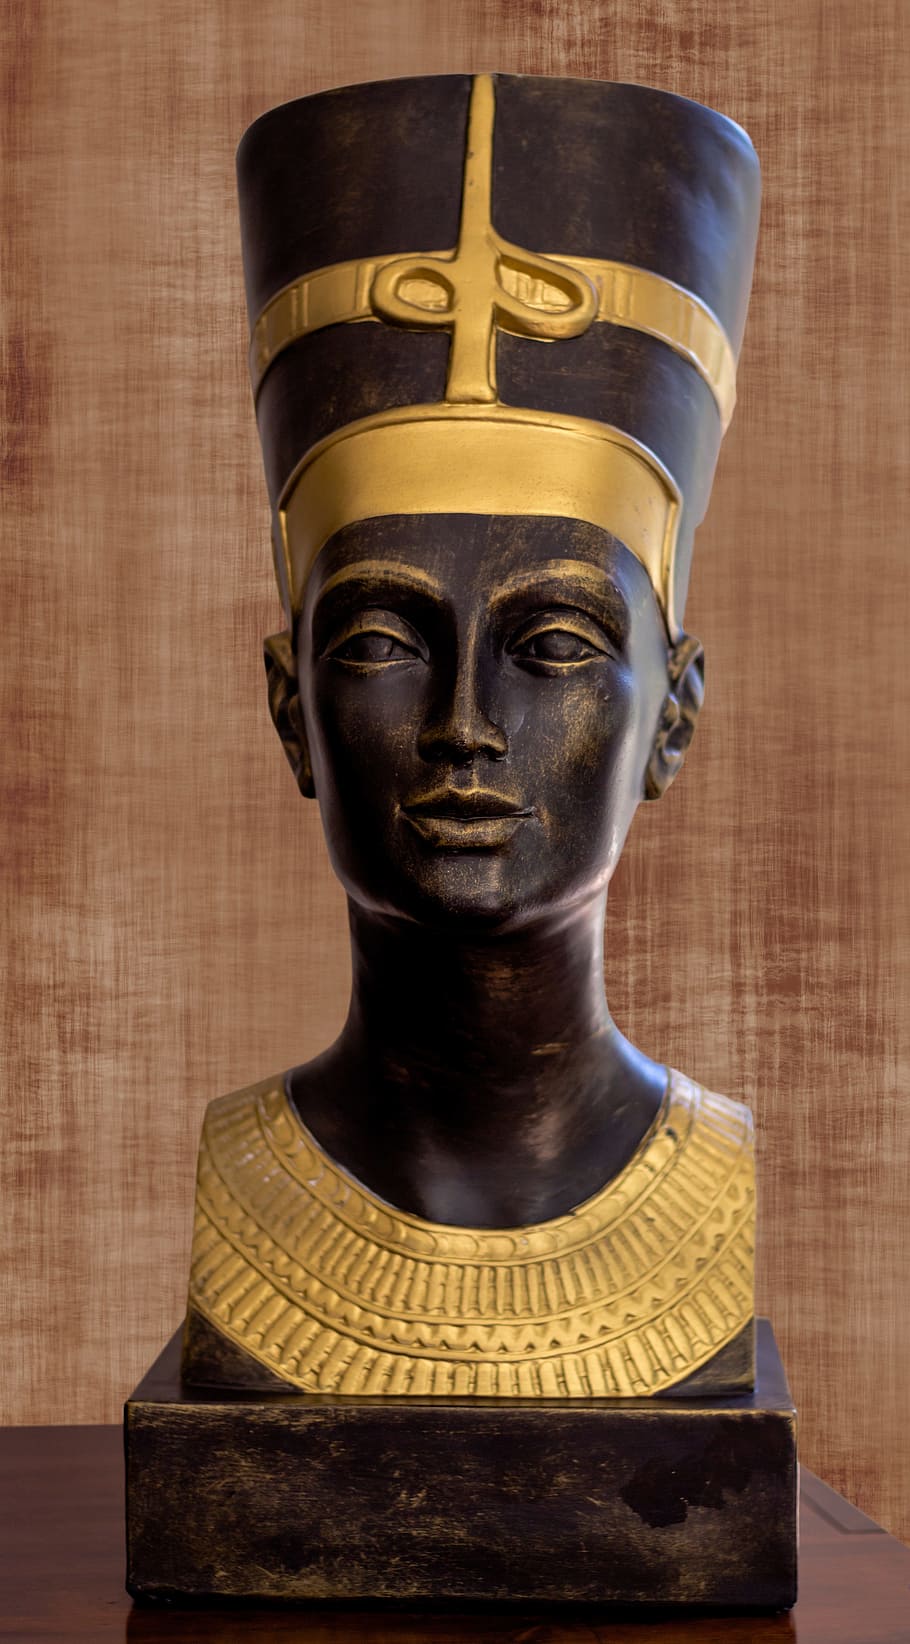 Egipto, Nefertiti, figura, escultura, estatua, oro, color oro, historia, vista frontal, representación humana